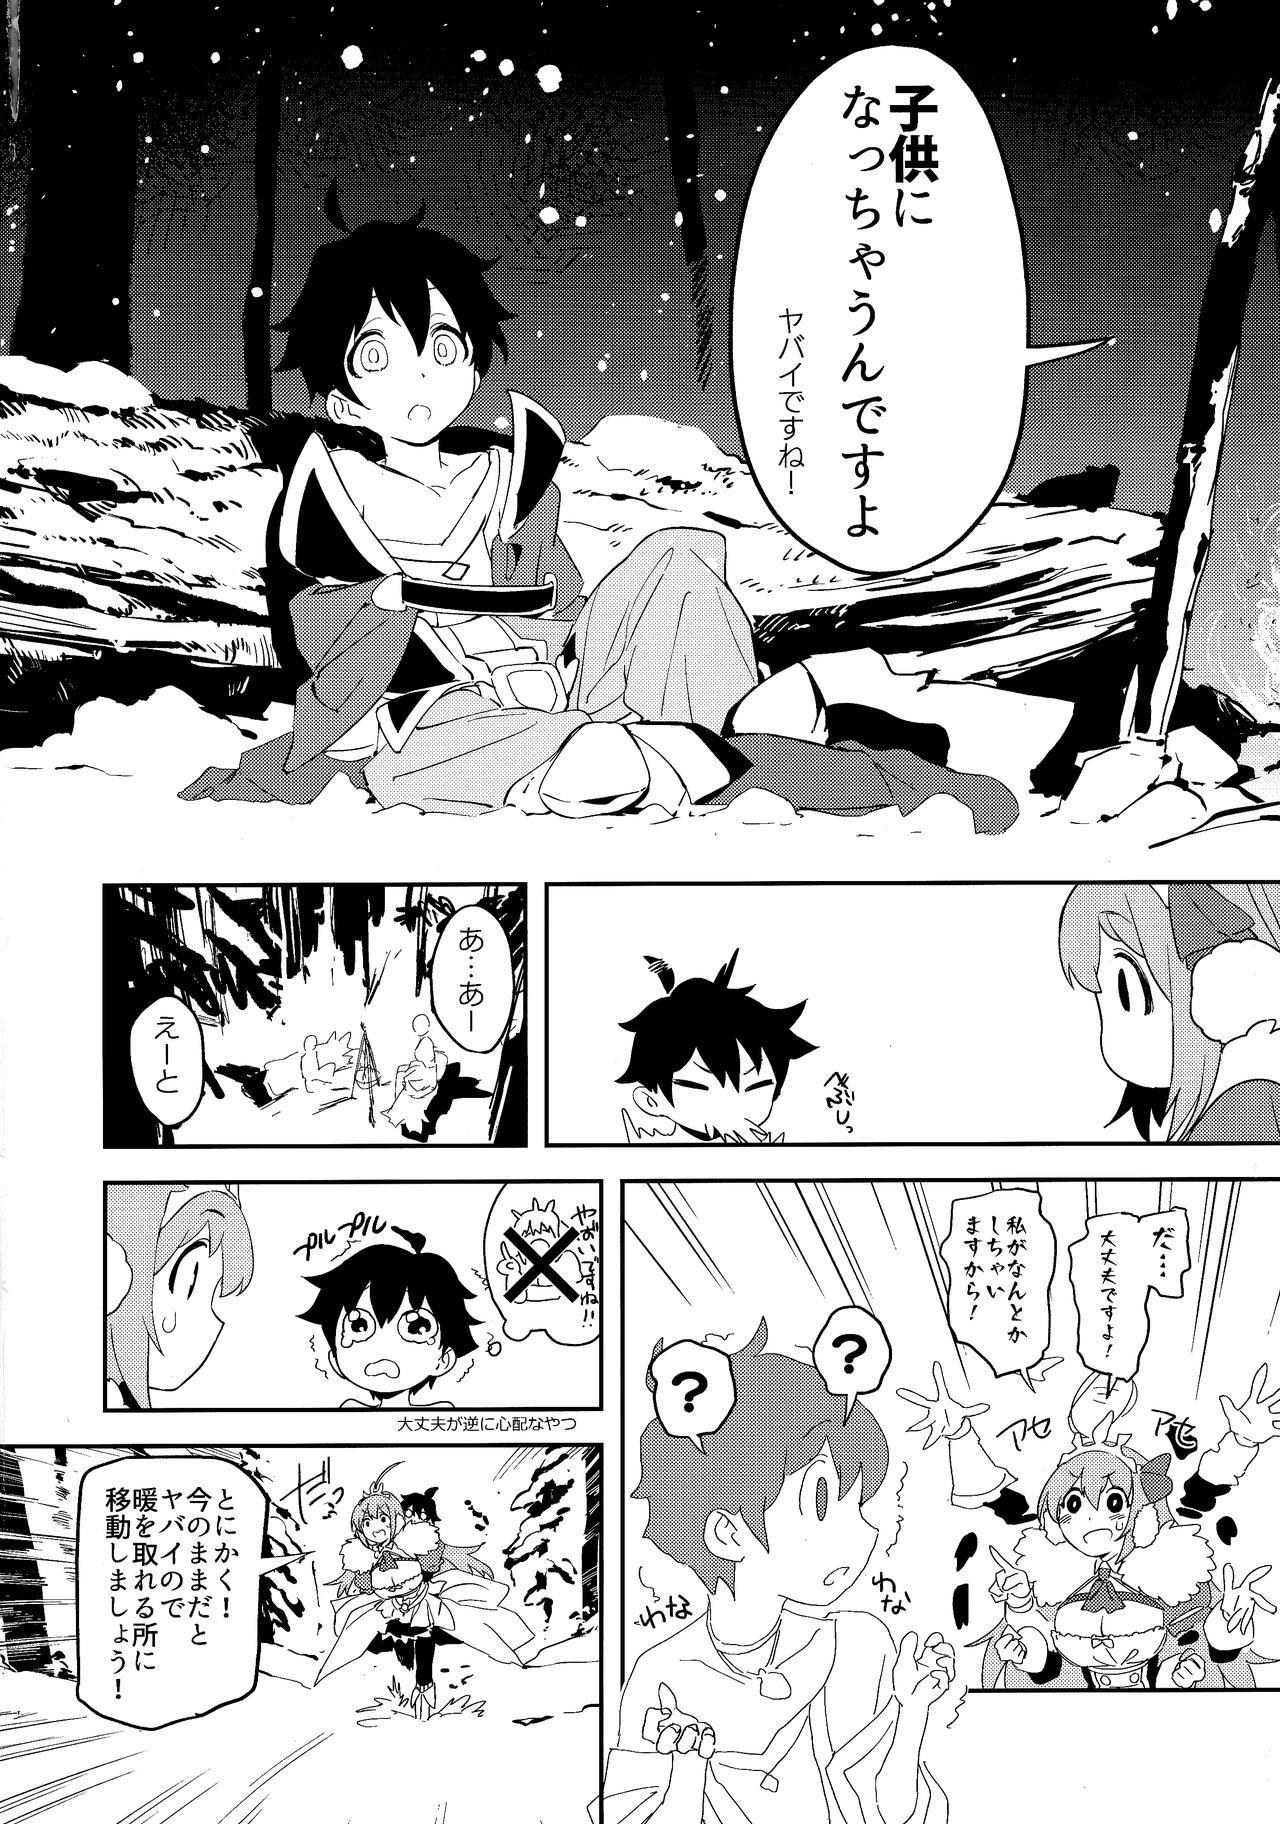  Pecorine to Shota Kishi-kun - Princess connect Trap - Page 3